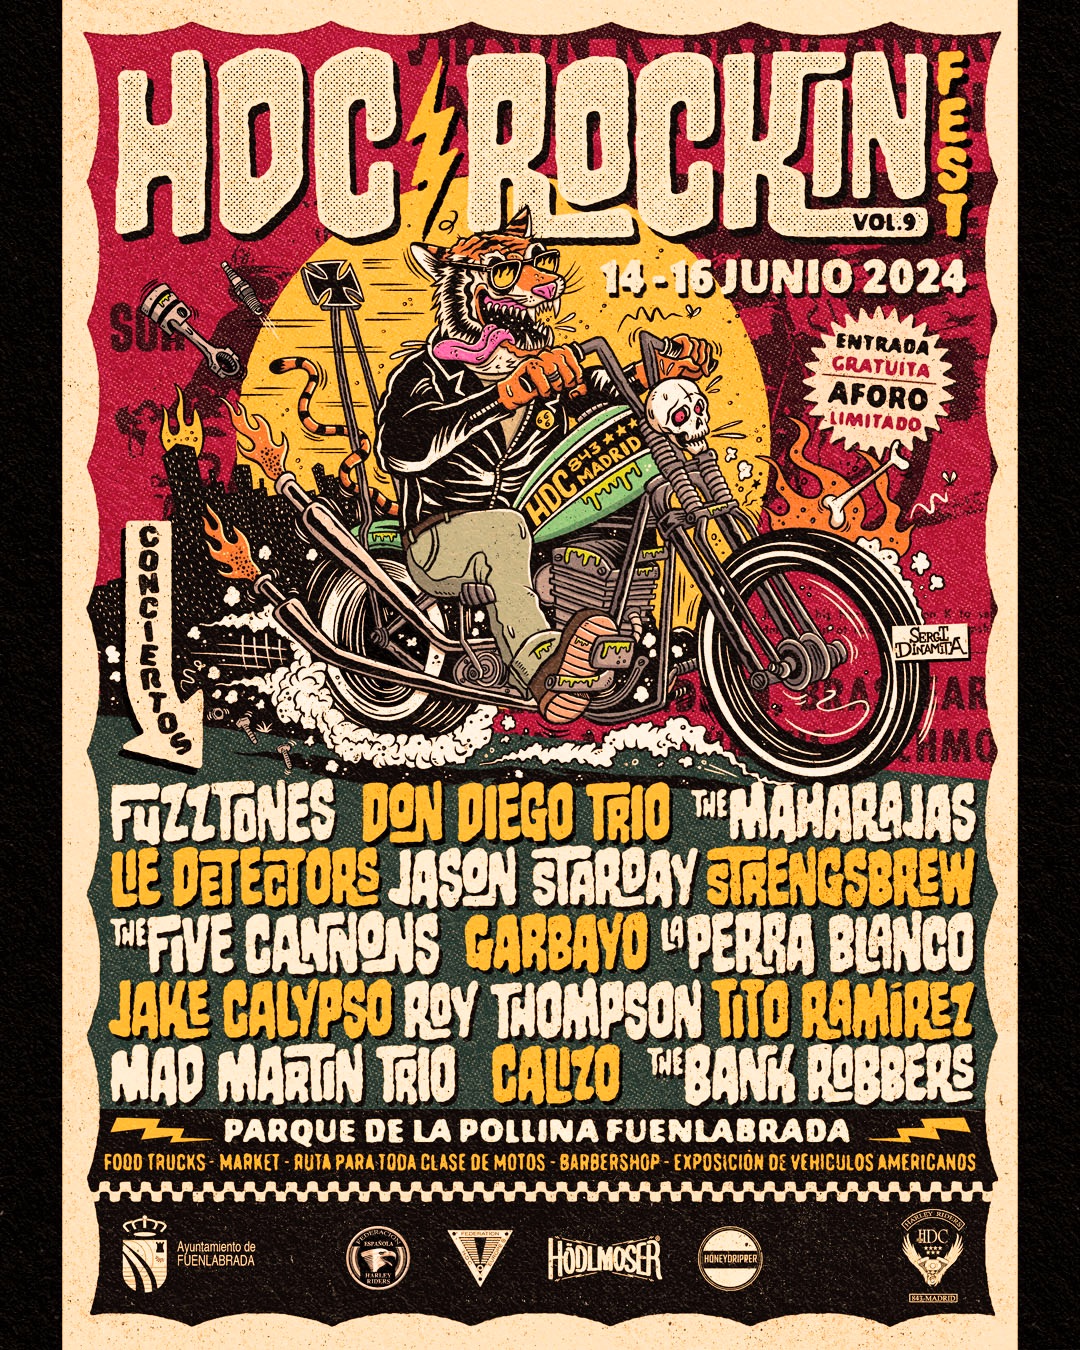 Cartel del HDC Rockin Fest 2024, gratis en junio en Fuenlabrada